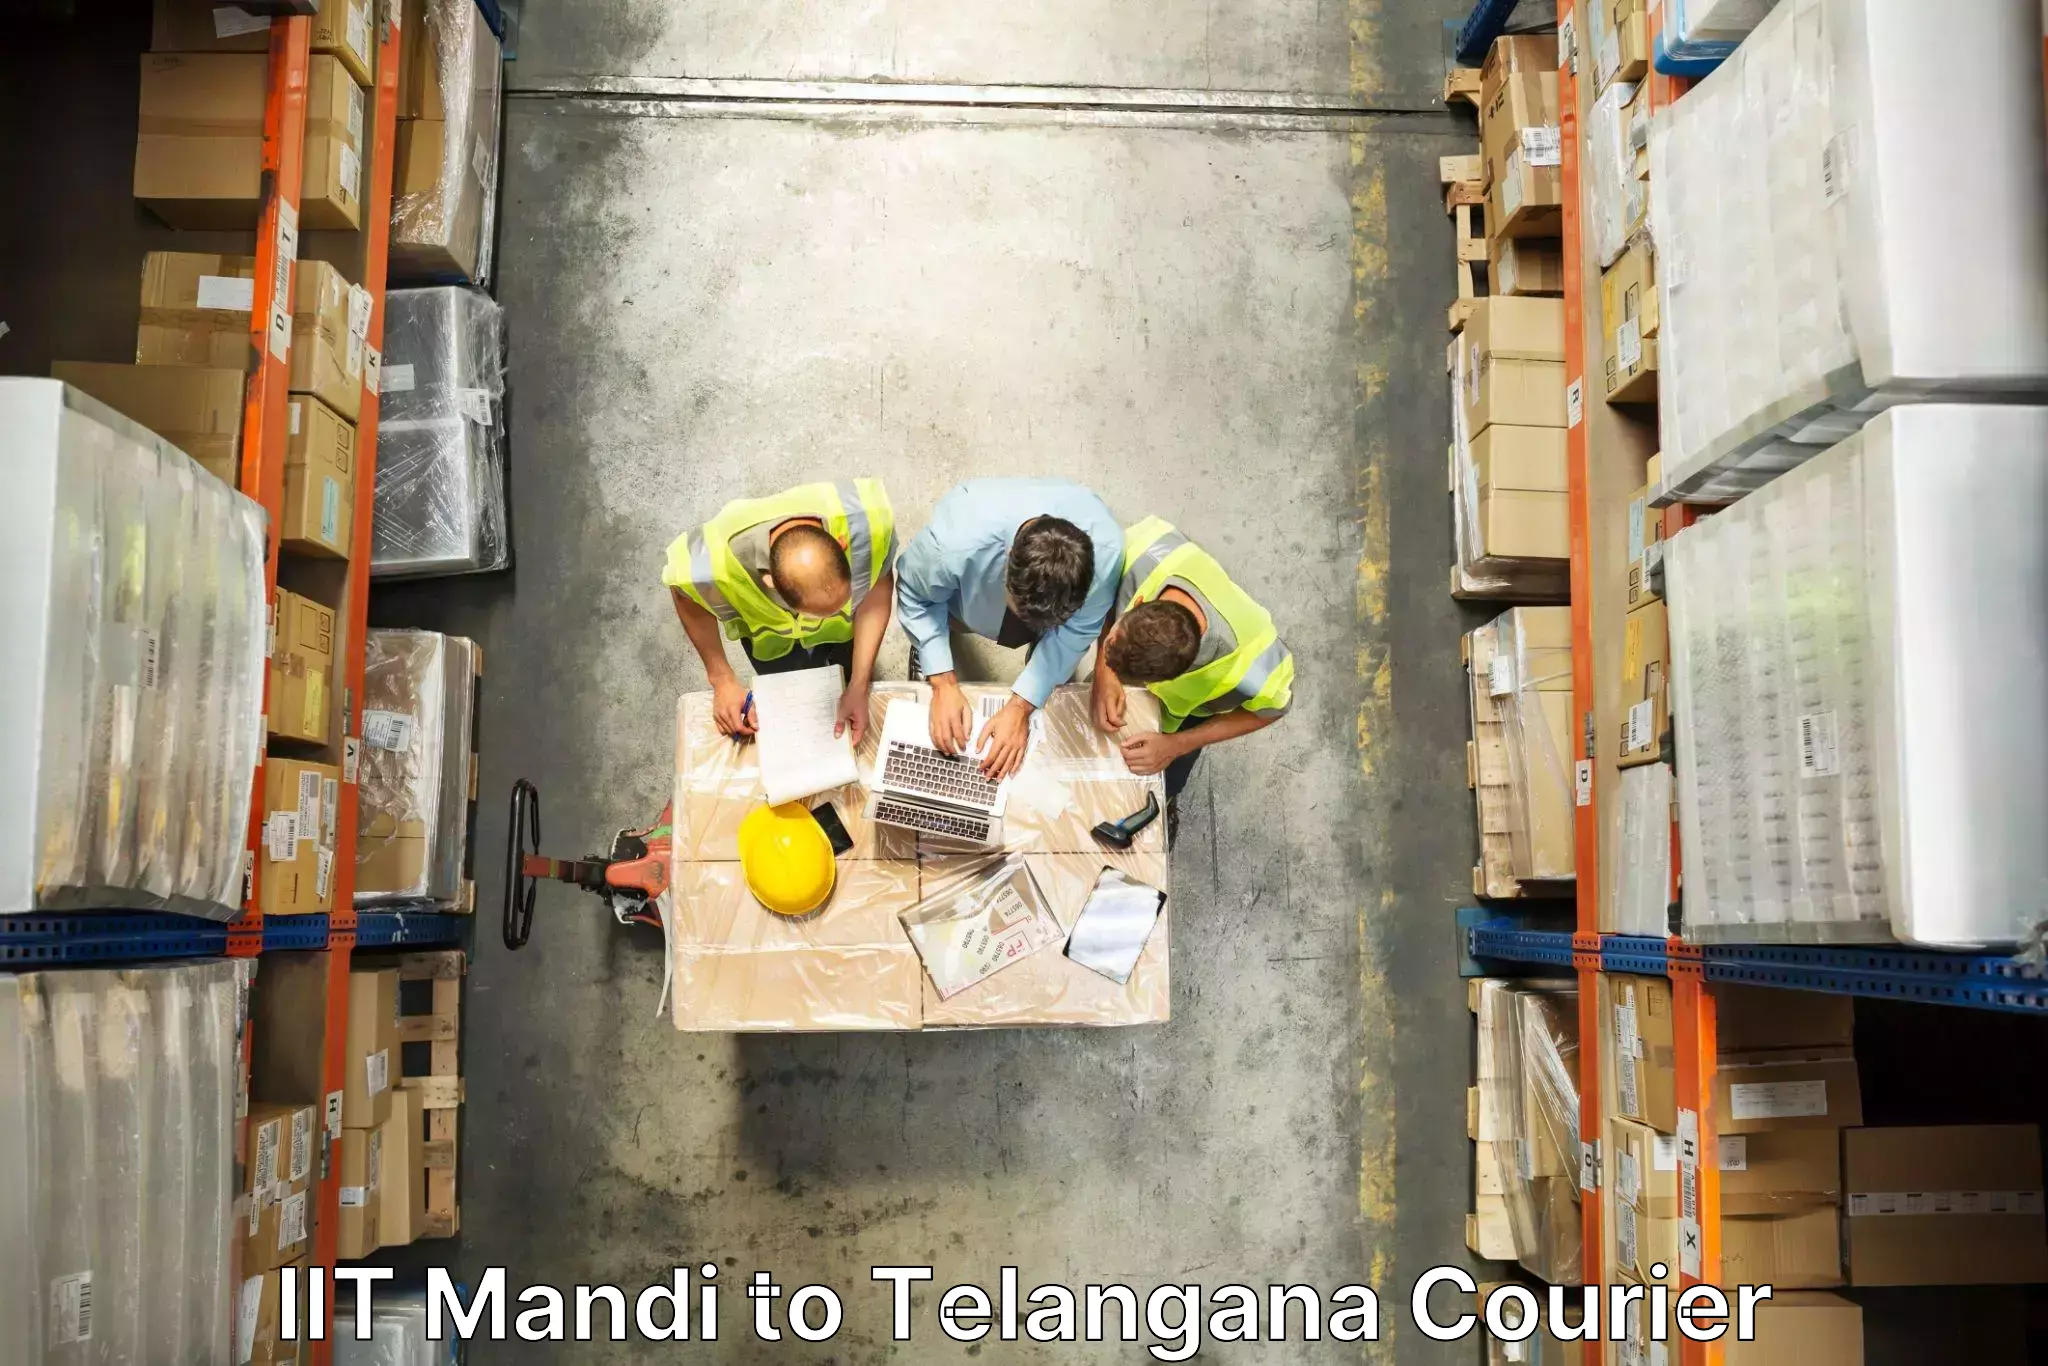 Furniture transport specialists IIT Mandi to Jammikunta